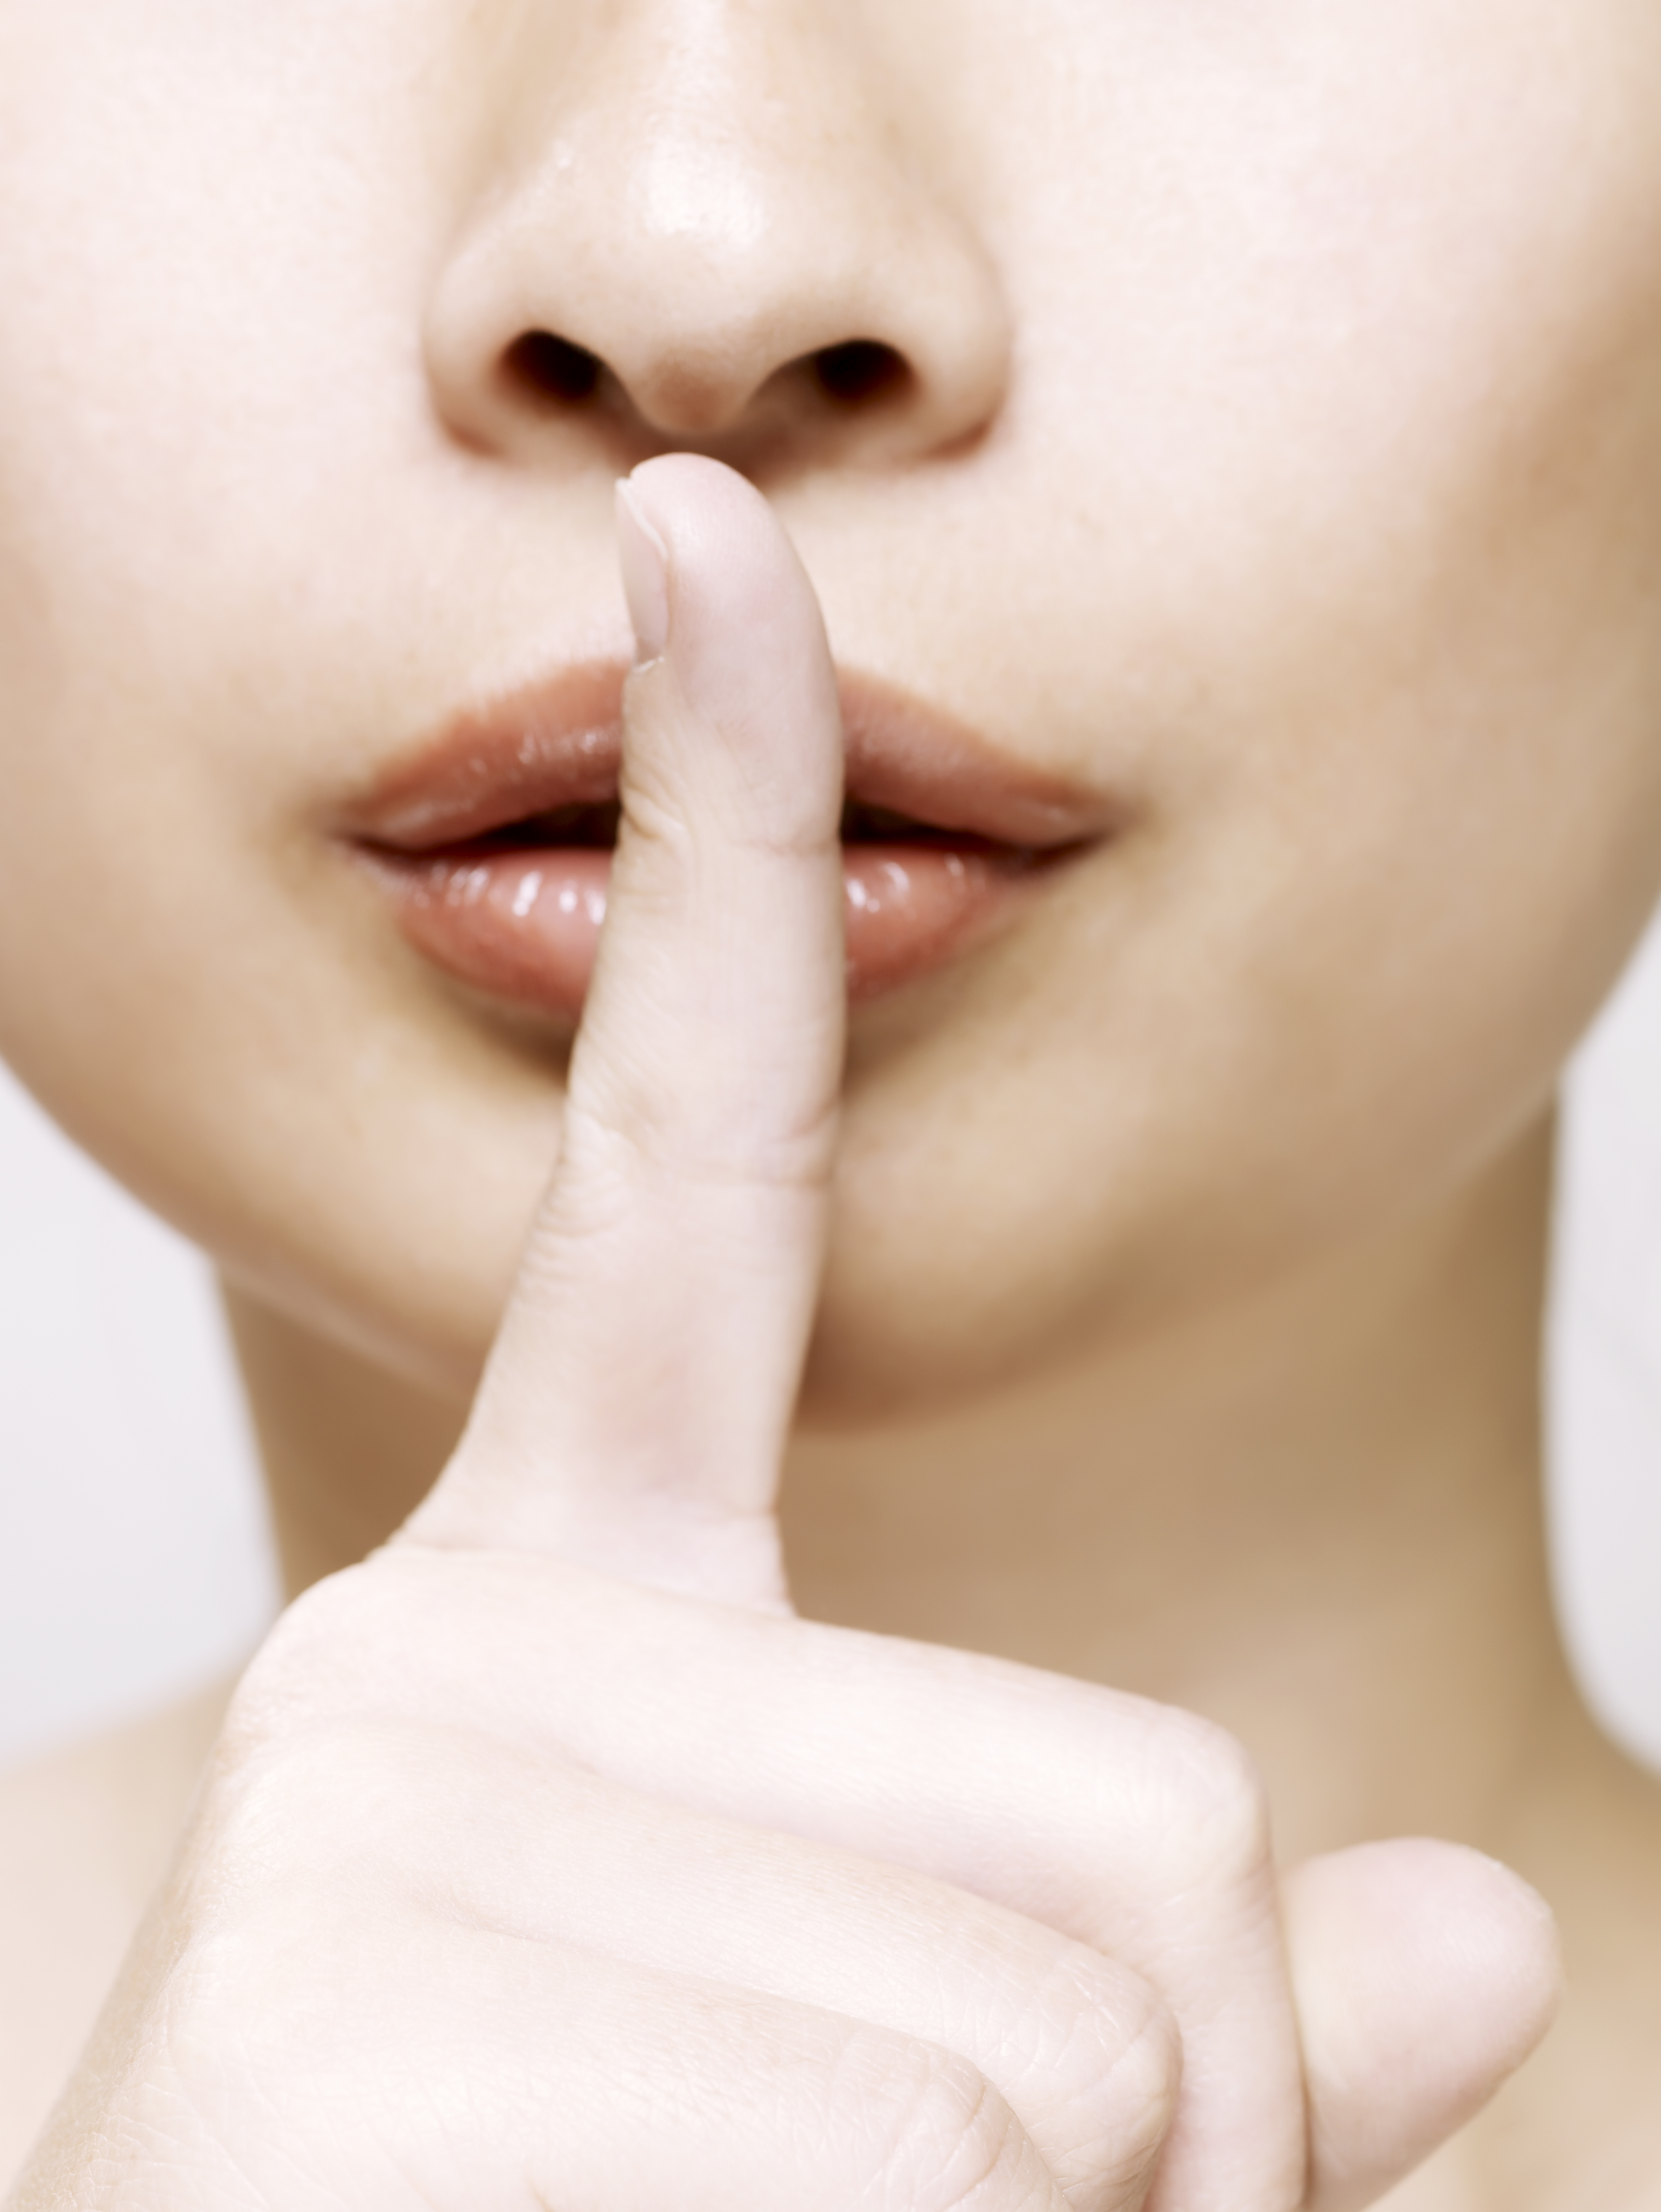 Femme avec un doigt sur les lèvres | Source : Getty Images